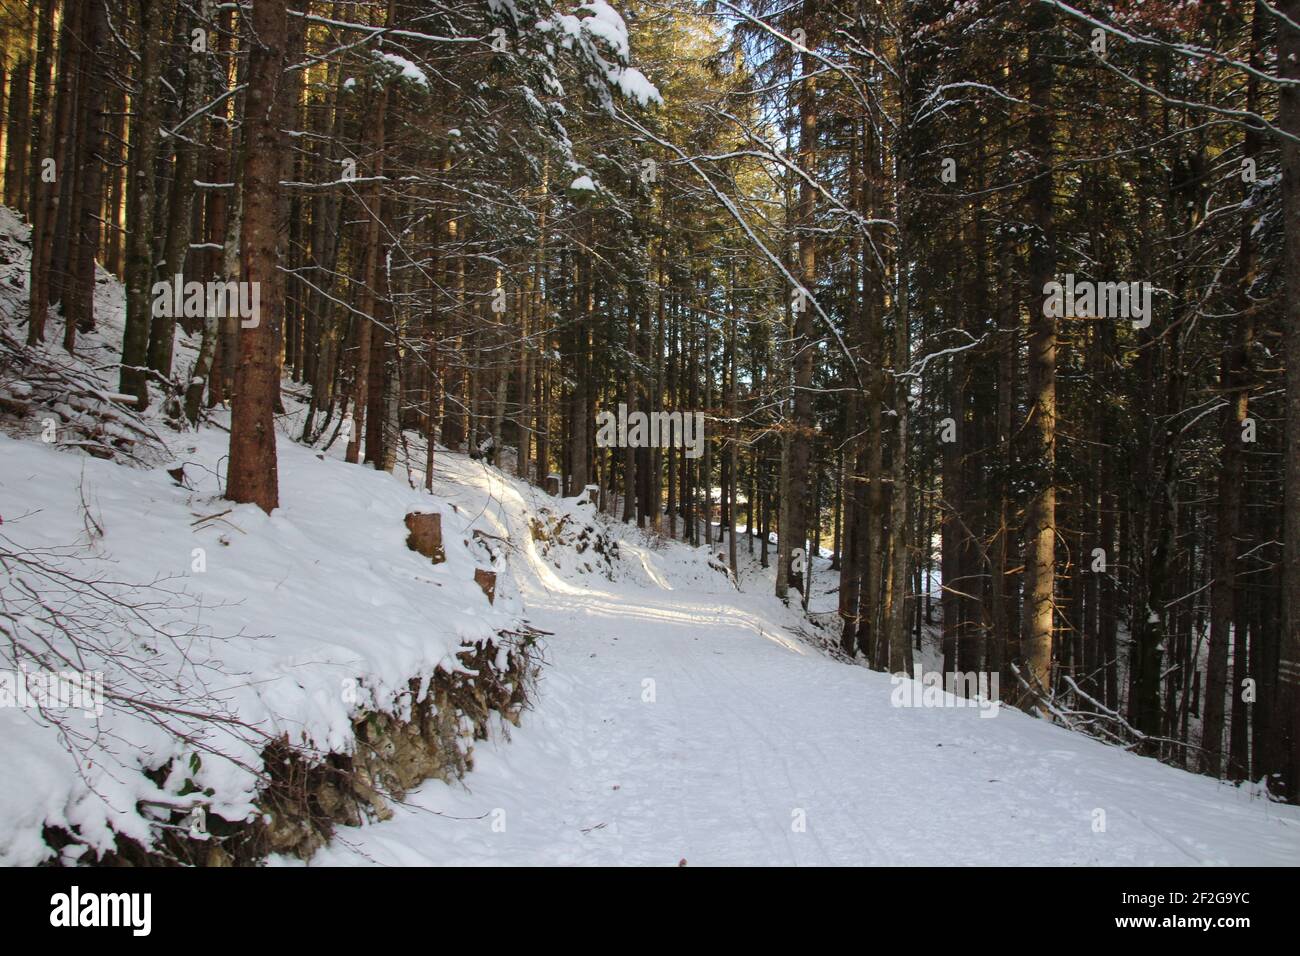 Escursione invernale nei pressi di Mittenwald, vicino a Elmau, Klais, Europa, Germania, Baviera, alta Baviera, Werdenfels, inverno, sentiero escursionistico nella foresta innevata, raggi del sole Foto Stock